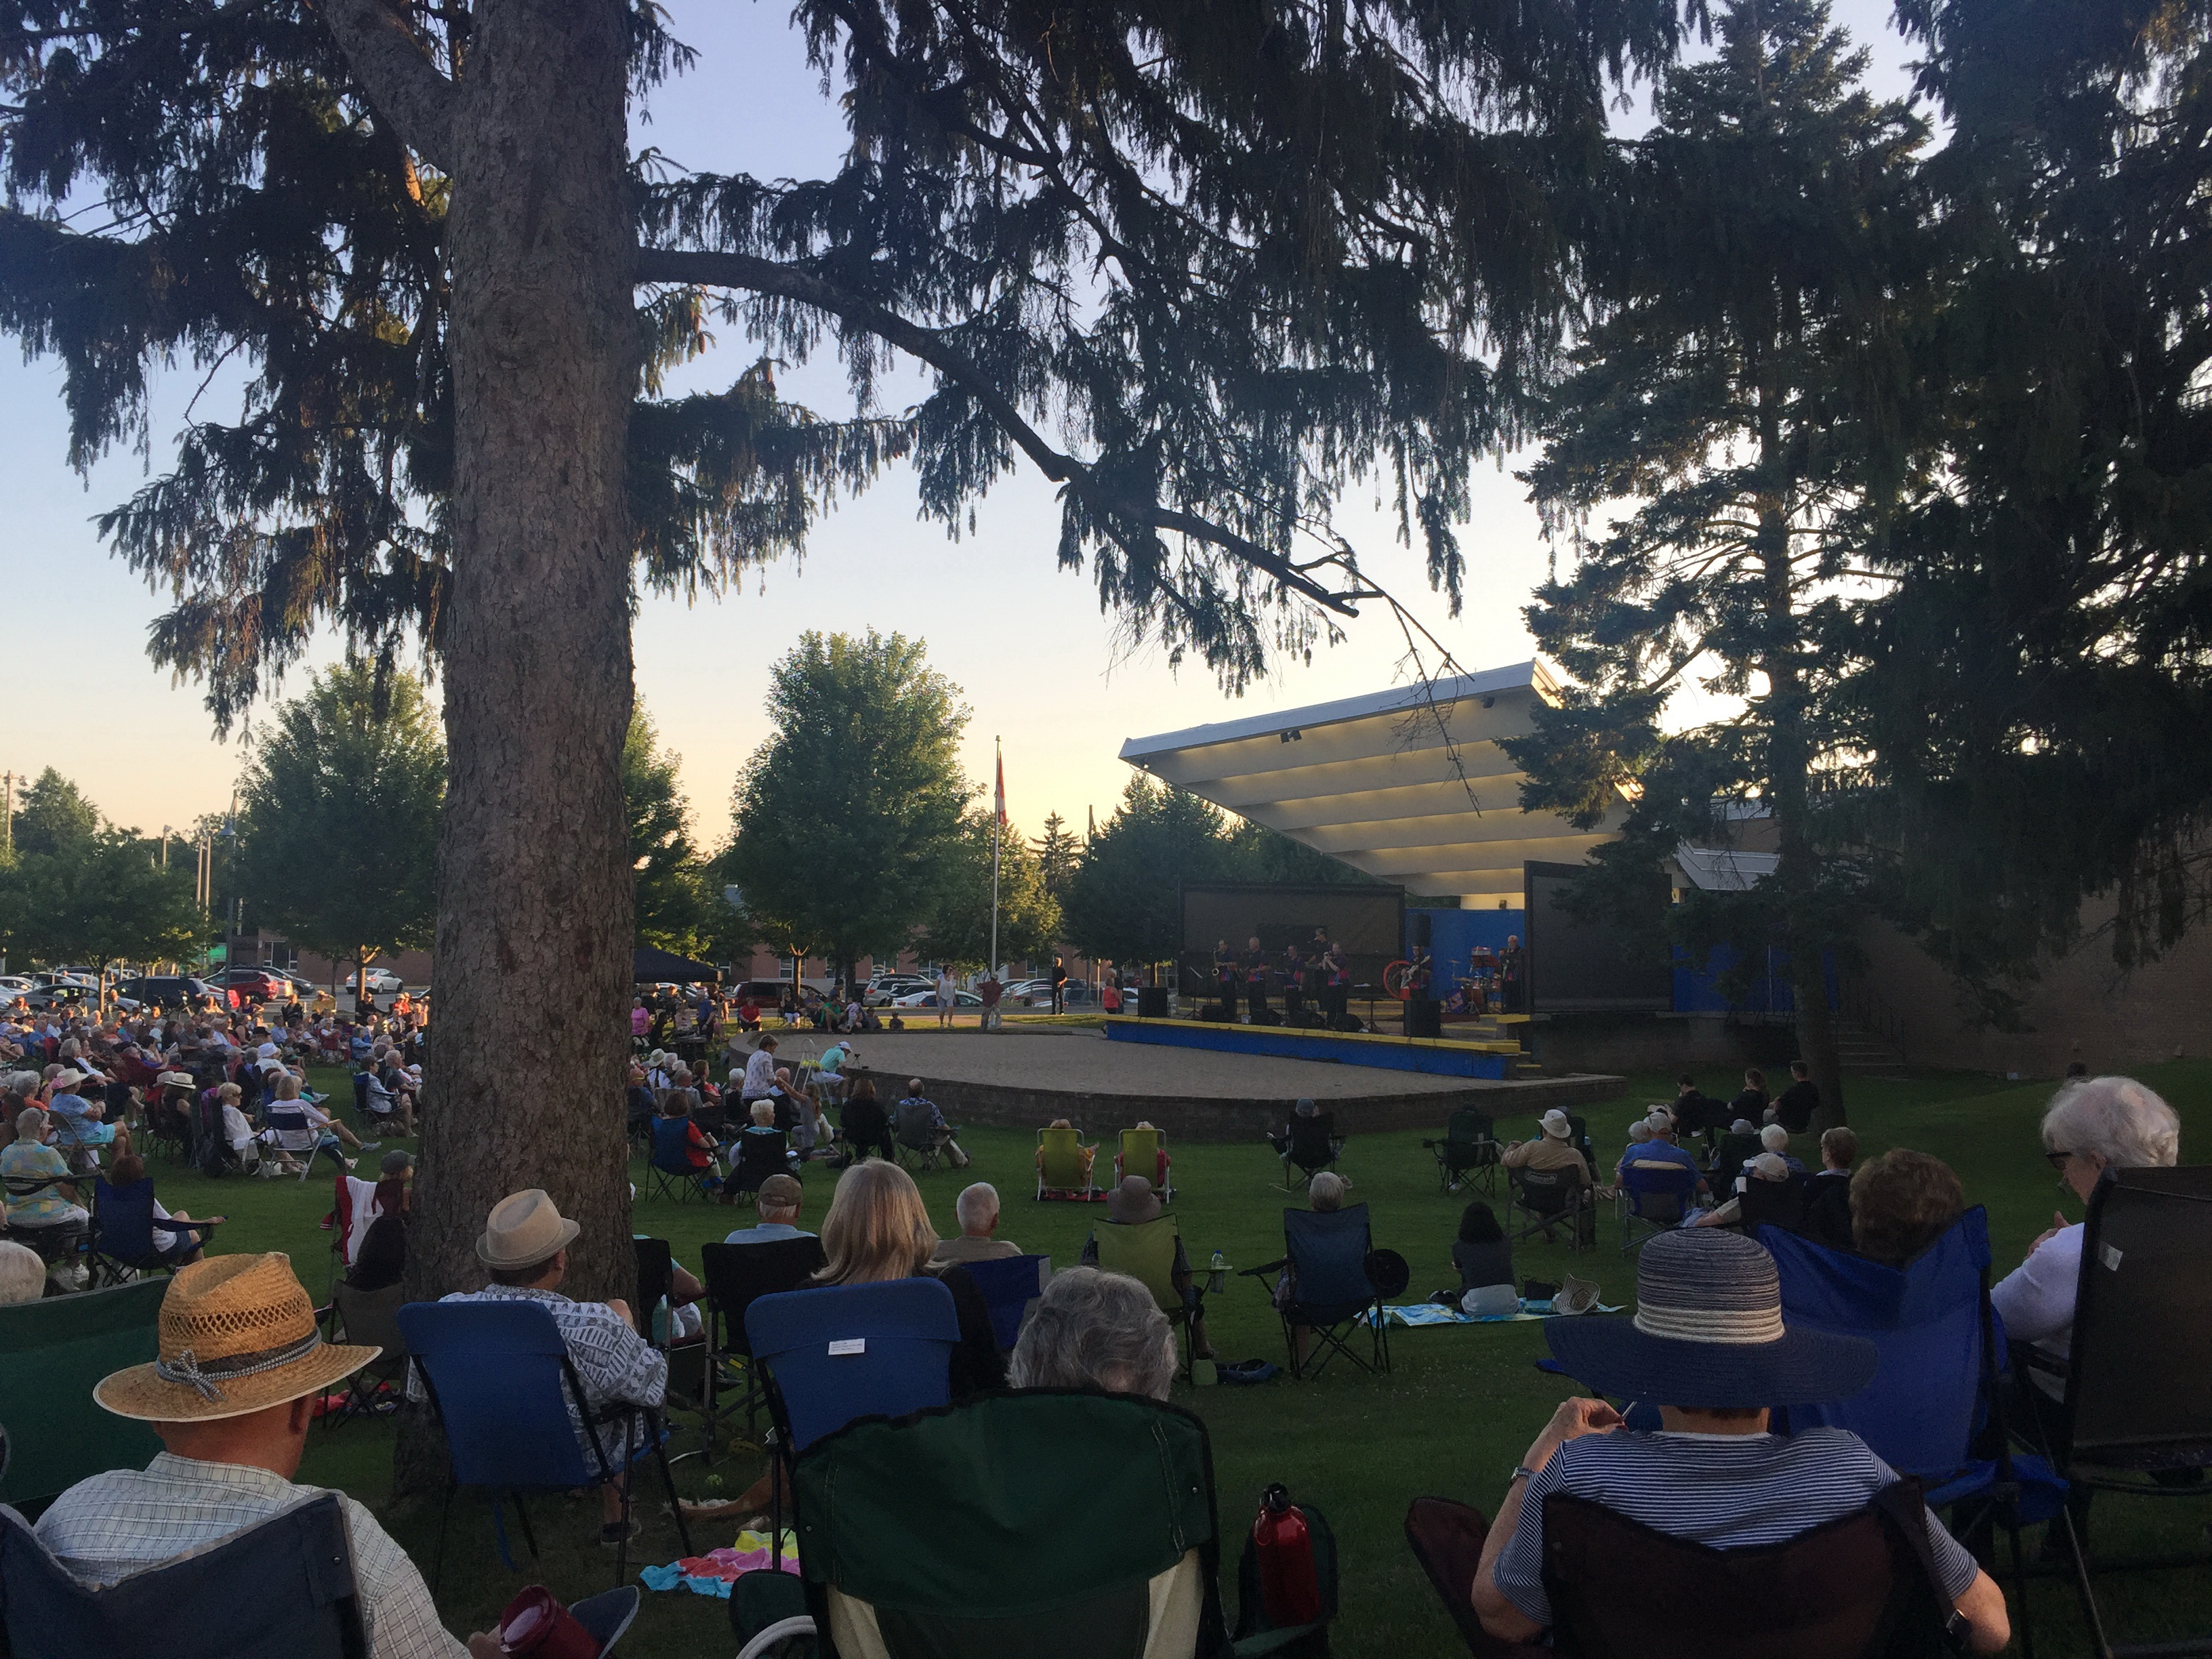 Concerts in Park Tourism Burlington Tourism Burlington